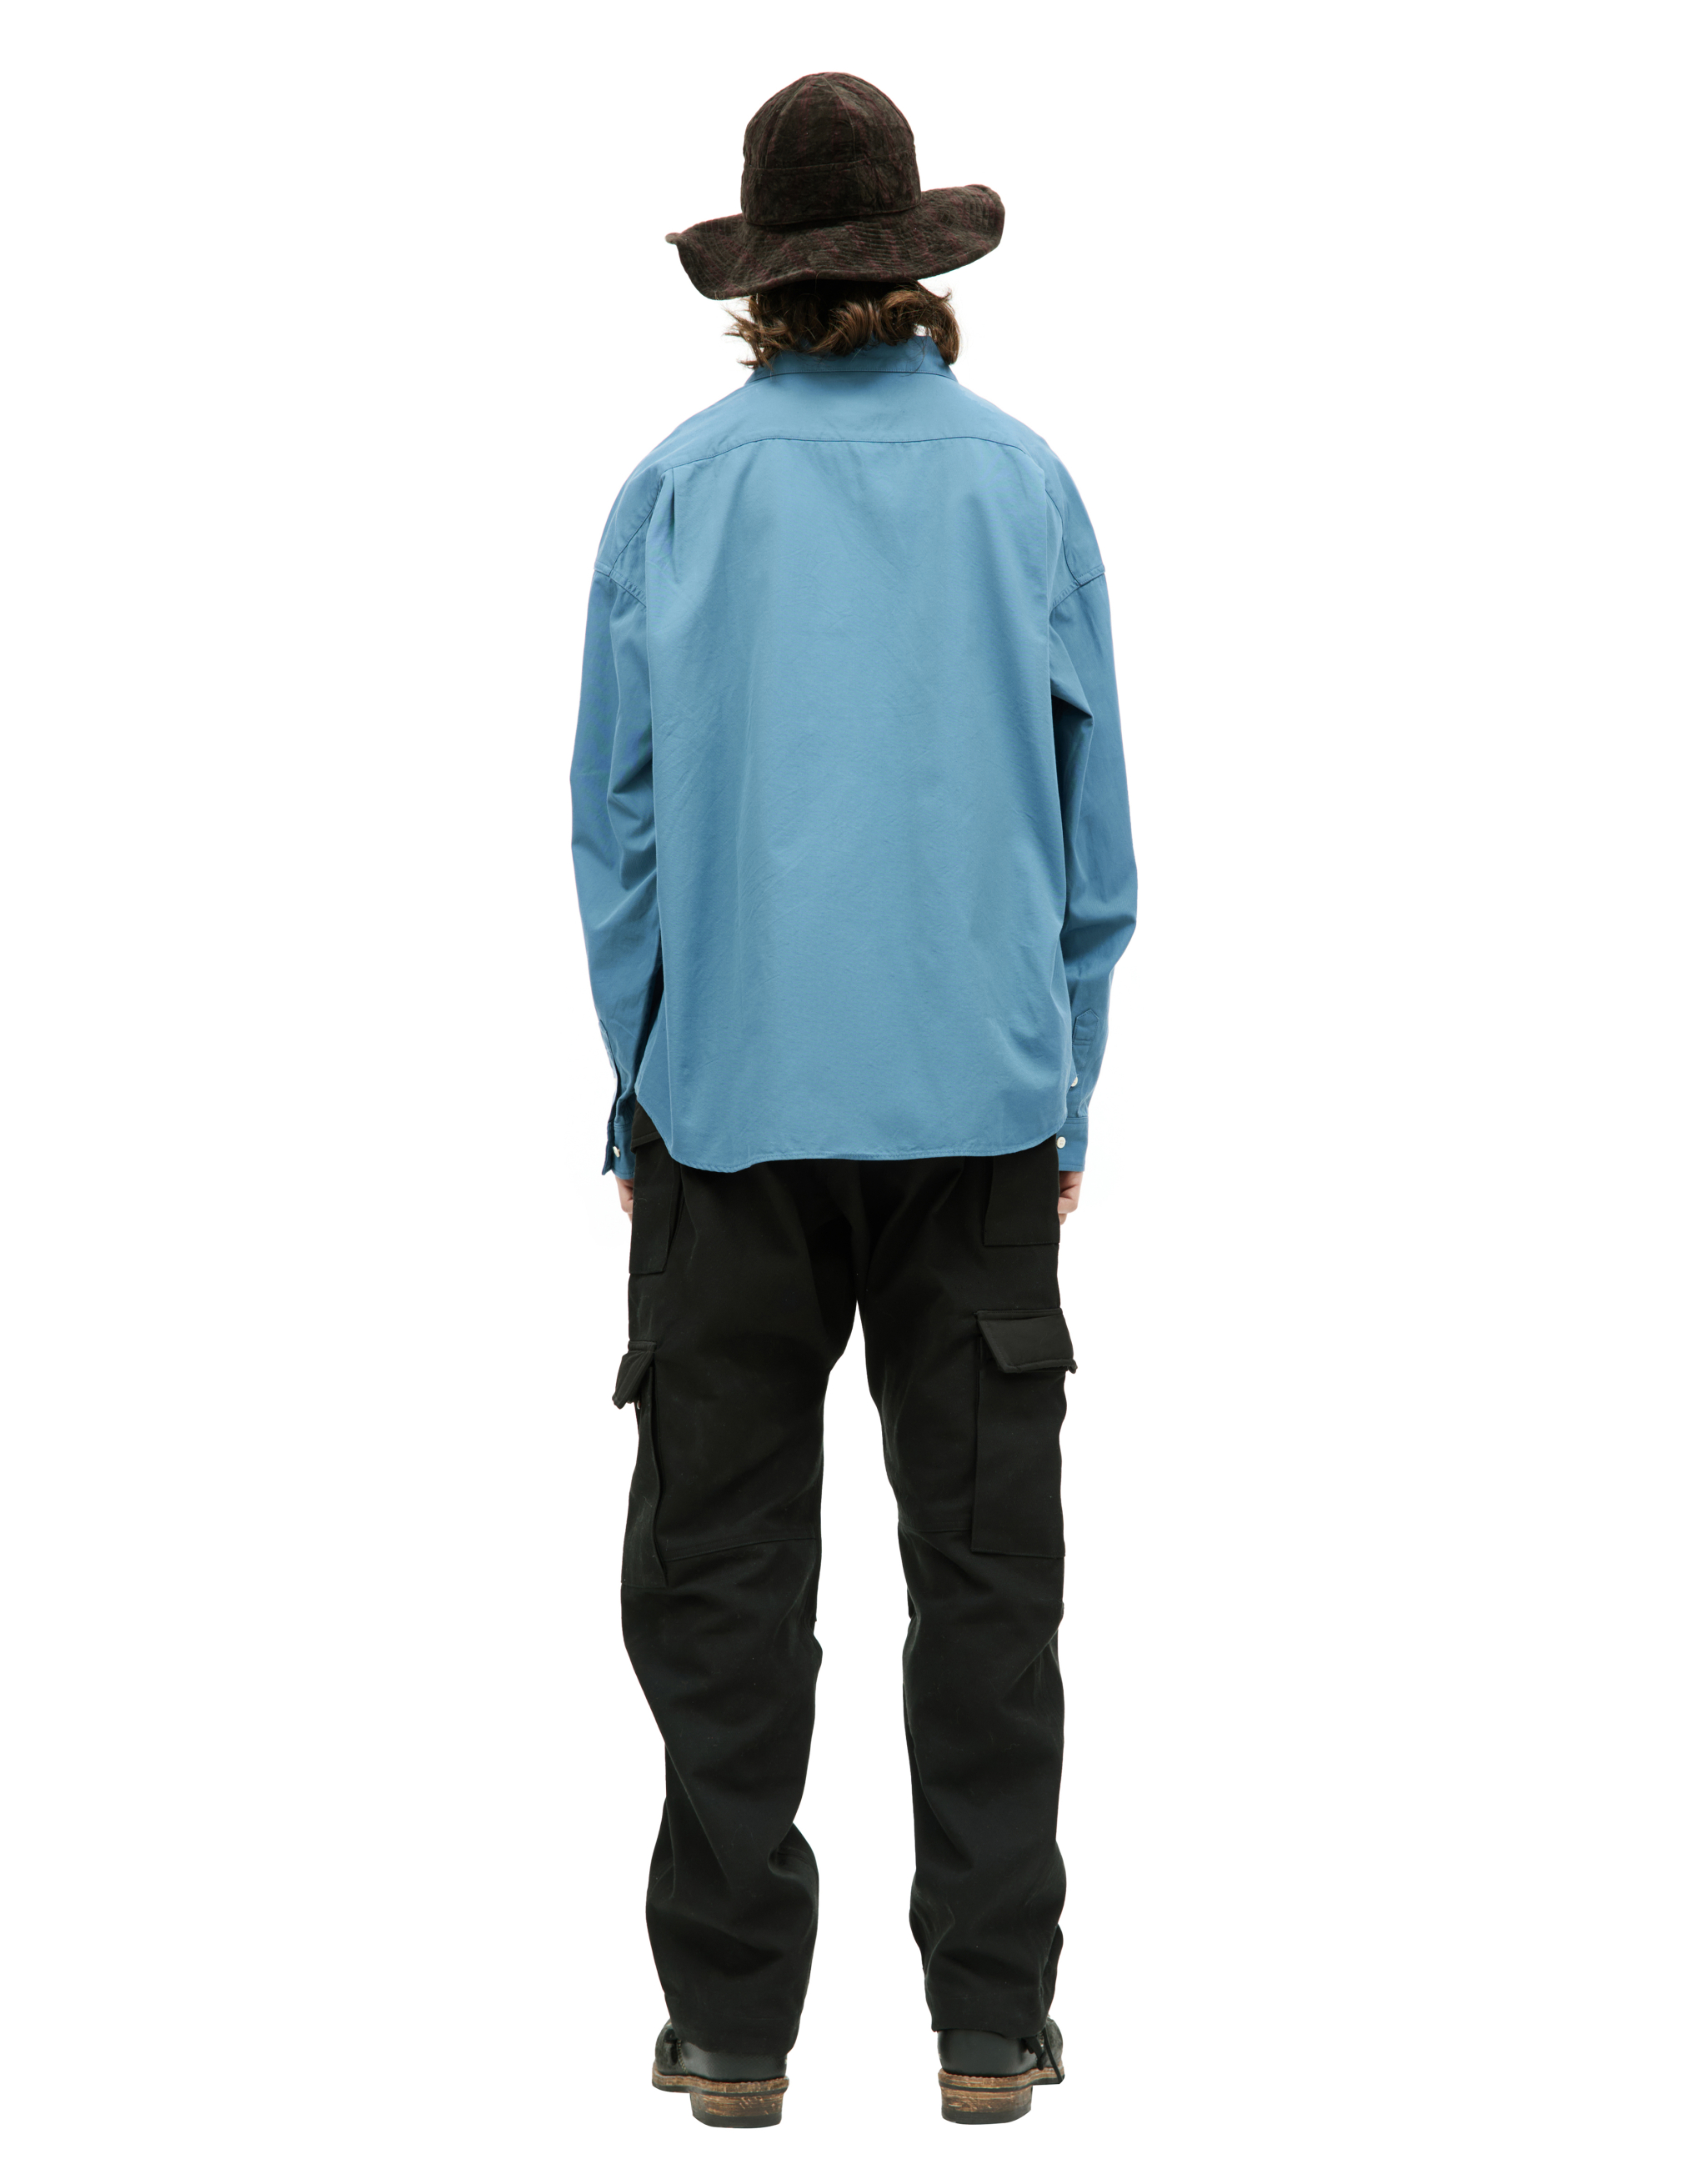 Хлопковая рубашка Palmer с вышивкой visvim 0123205011015, размер 4;5 - фото 3